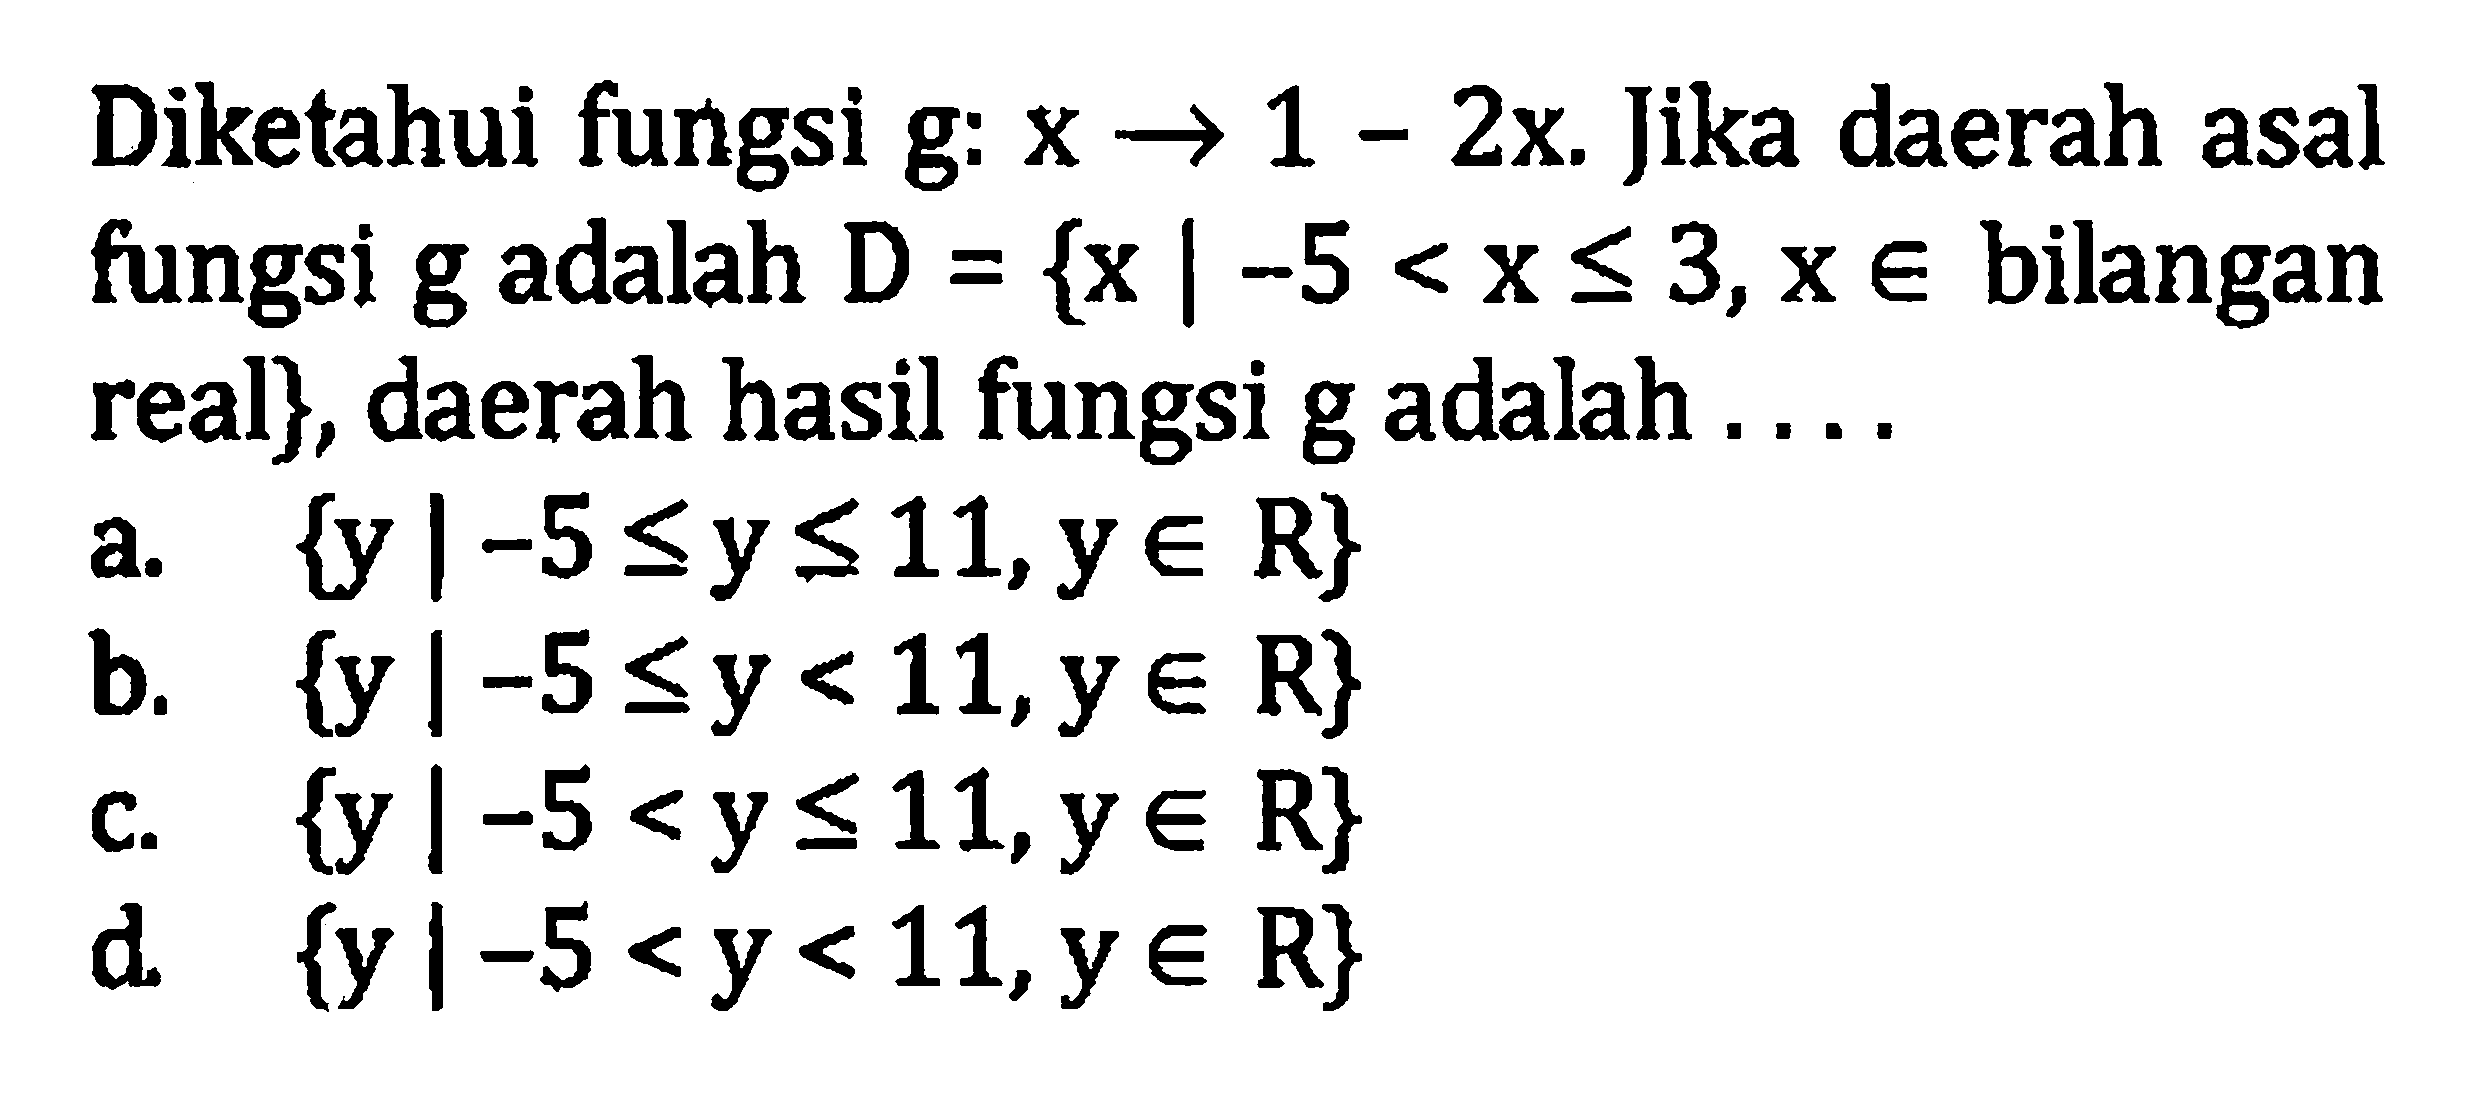 Diketahui fungsi g: x -> 1 - 2x. Jika daerah asal fungsi g adalah D = {x | -5 < x <= 3,x e bilangan real}, daerah hasil fungsi g adalah. . . . a. {y |-5 <= y <= 11, y e R} b. {y |-5 <= y < 11,y e R} c. {y |-5 < y <=11,y e R} d. {y|-5 < y< 11,y e R}